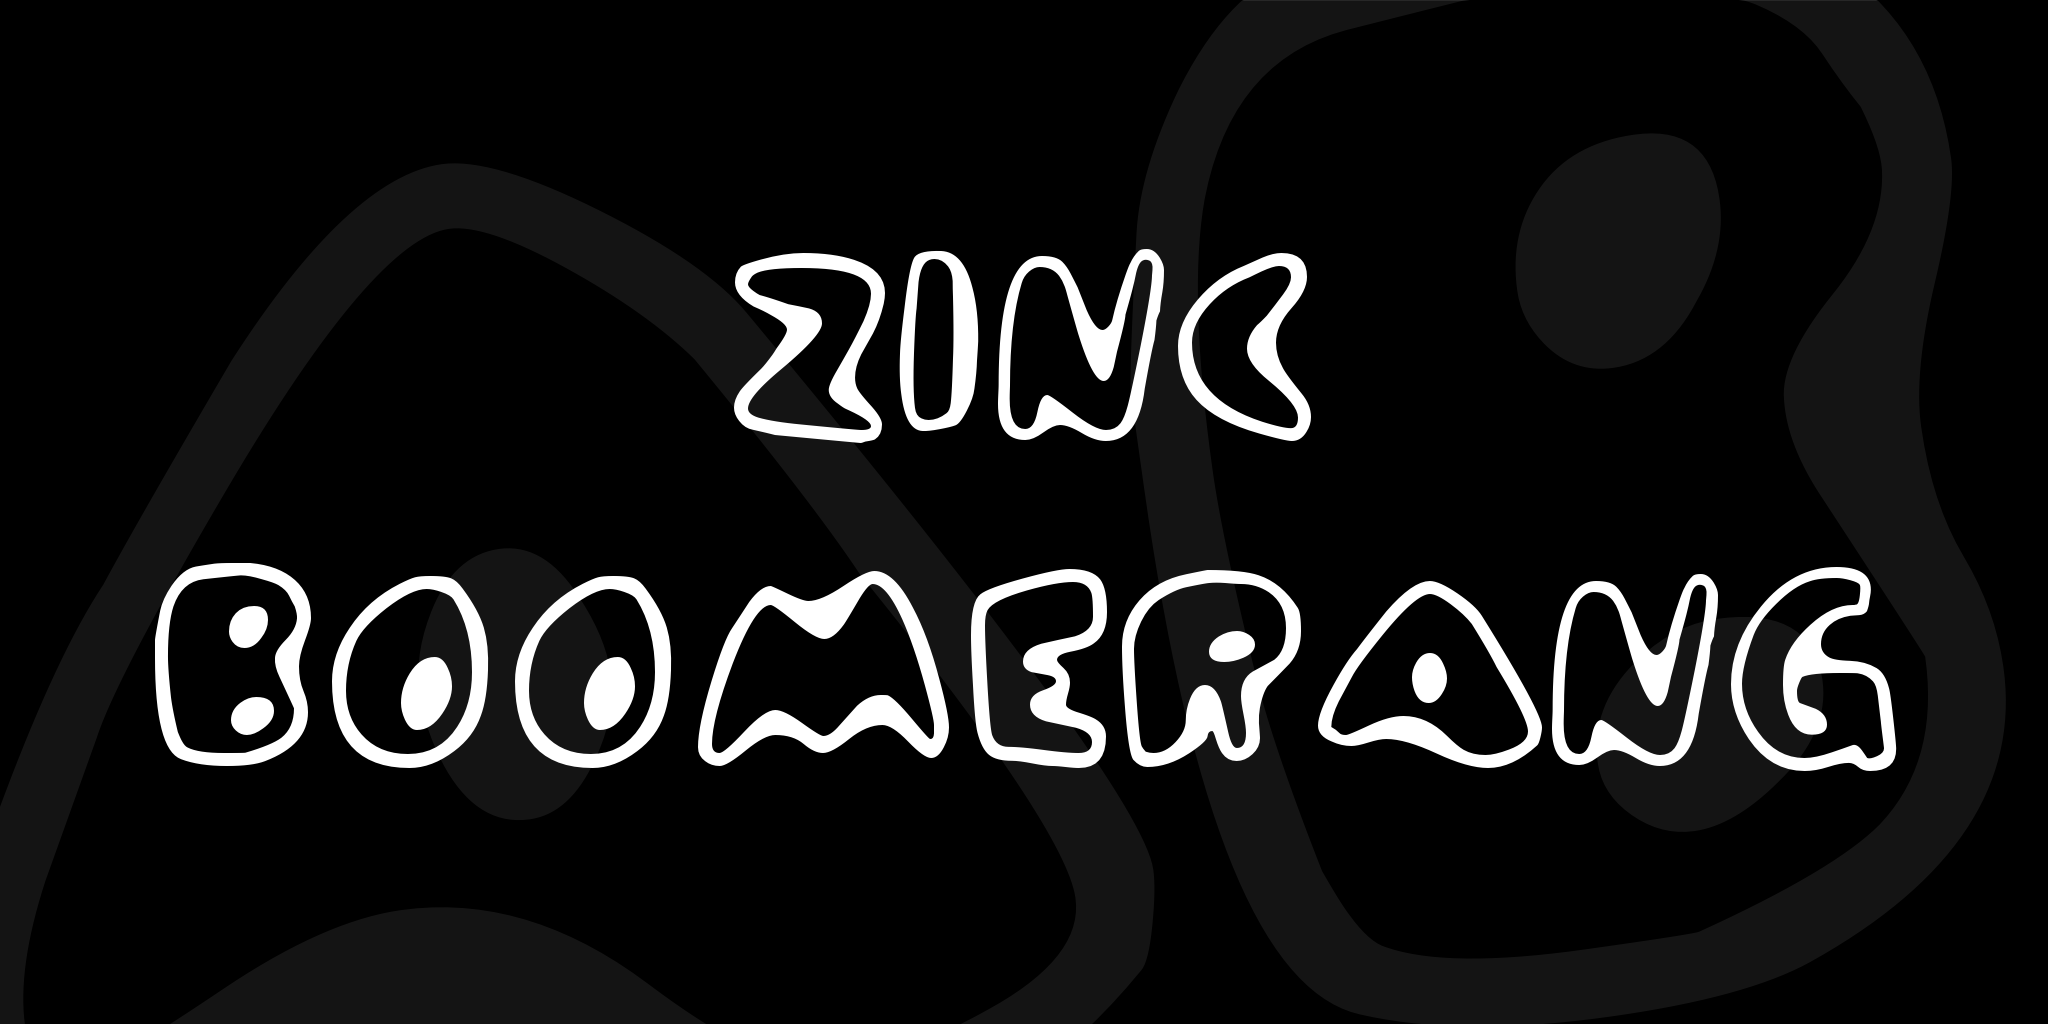 Zinc Boomerang